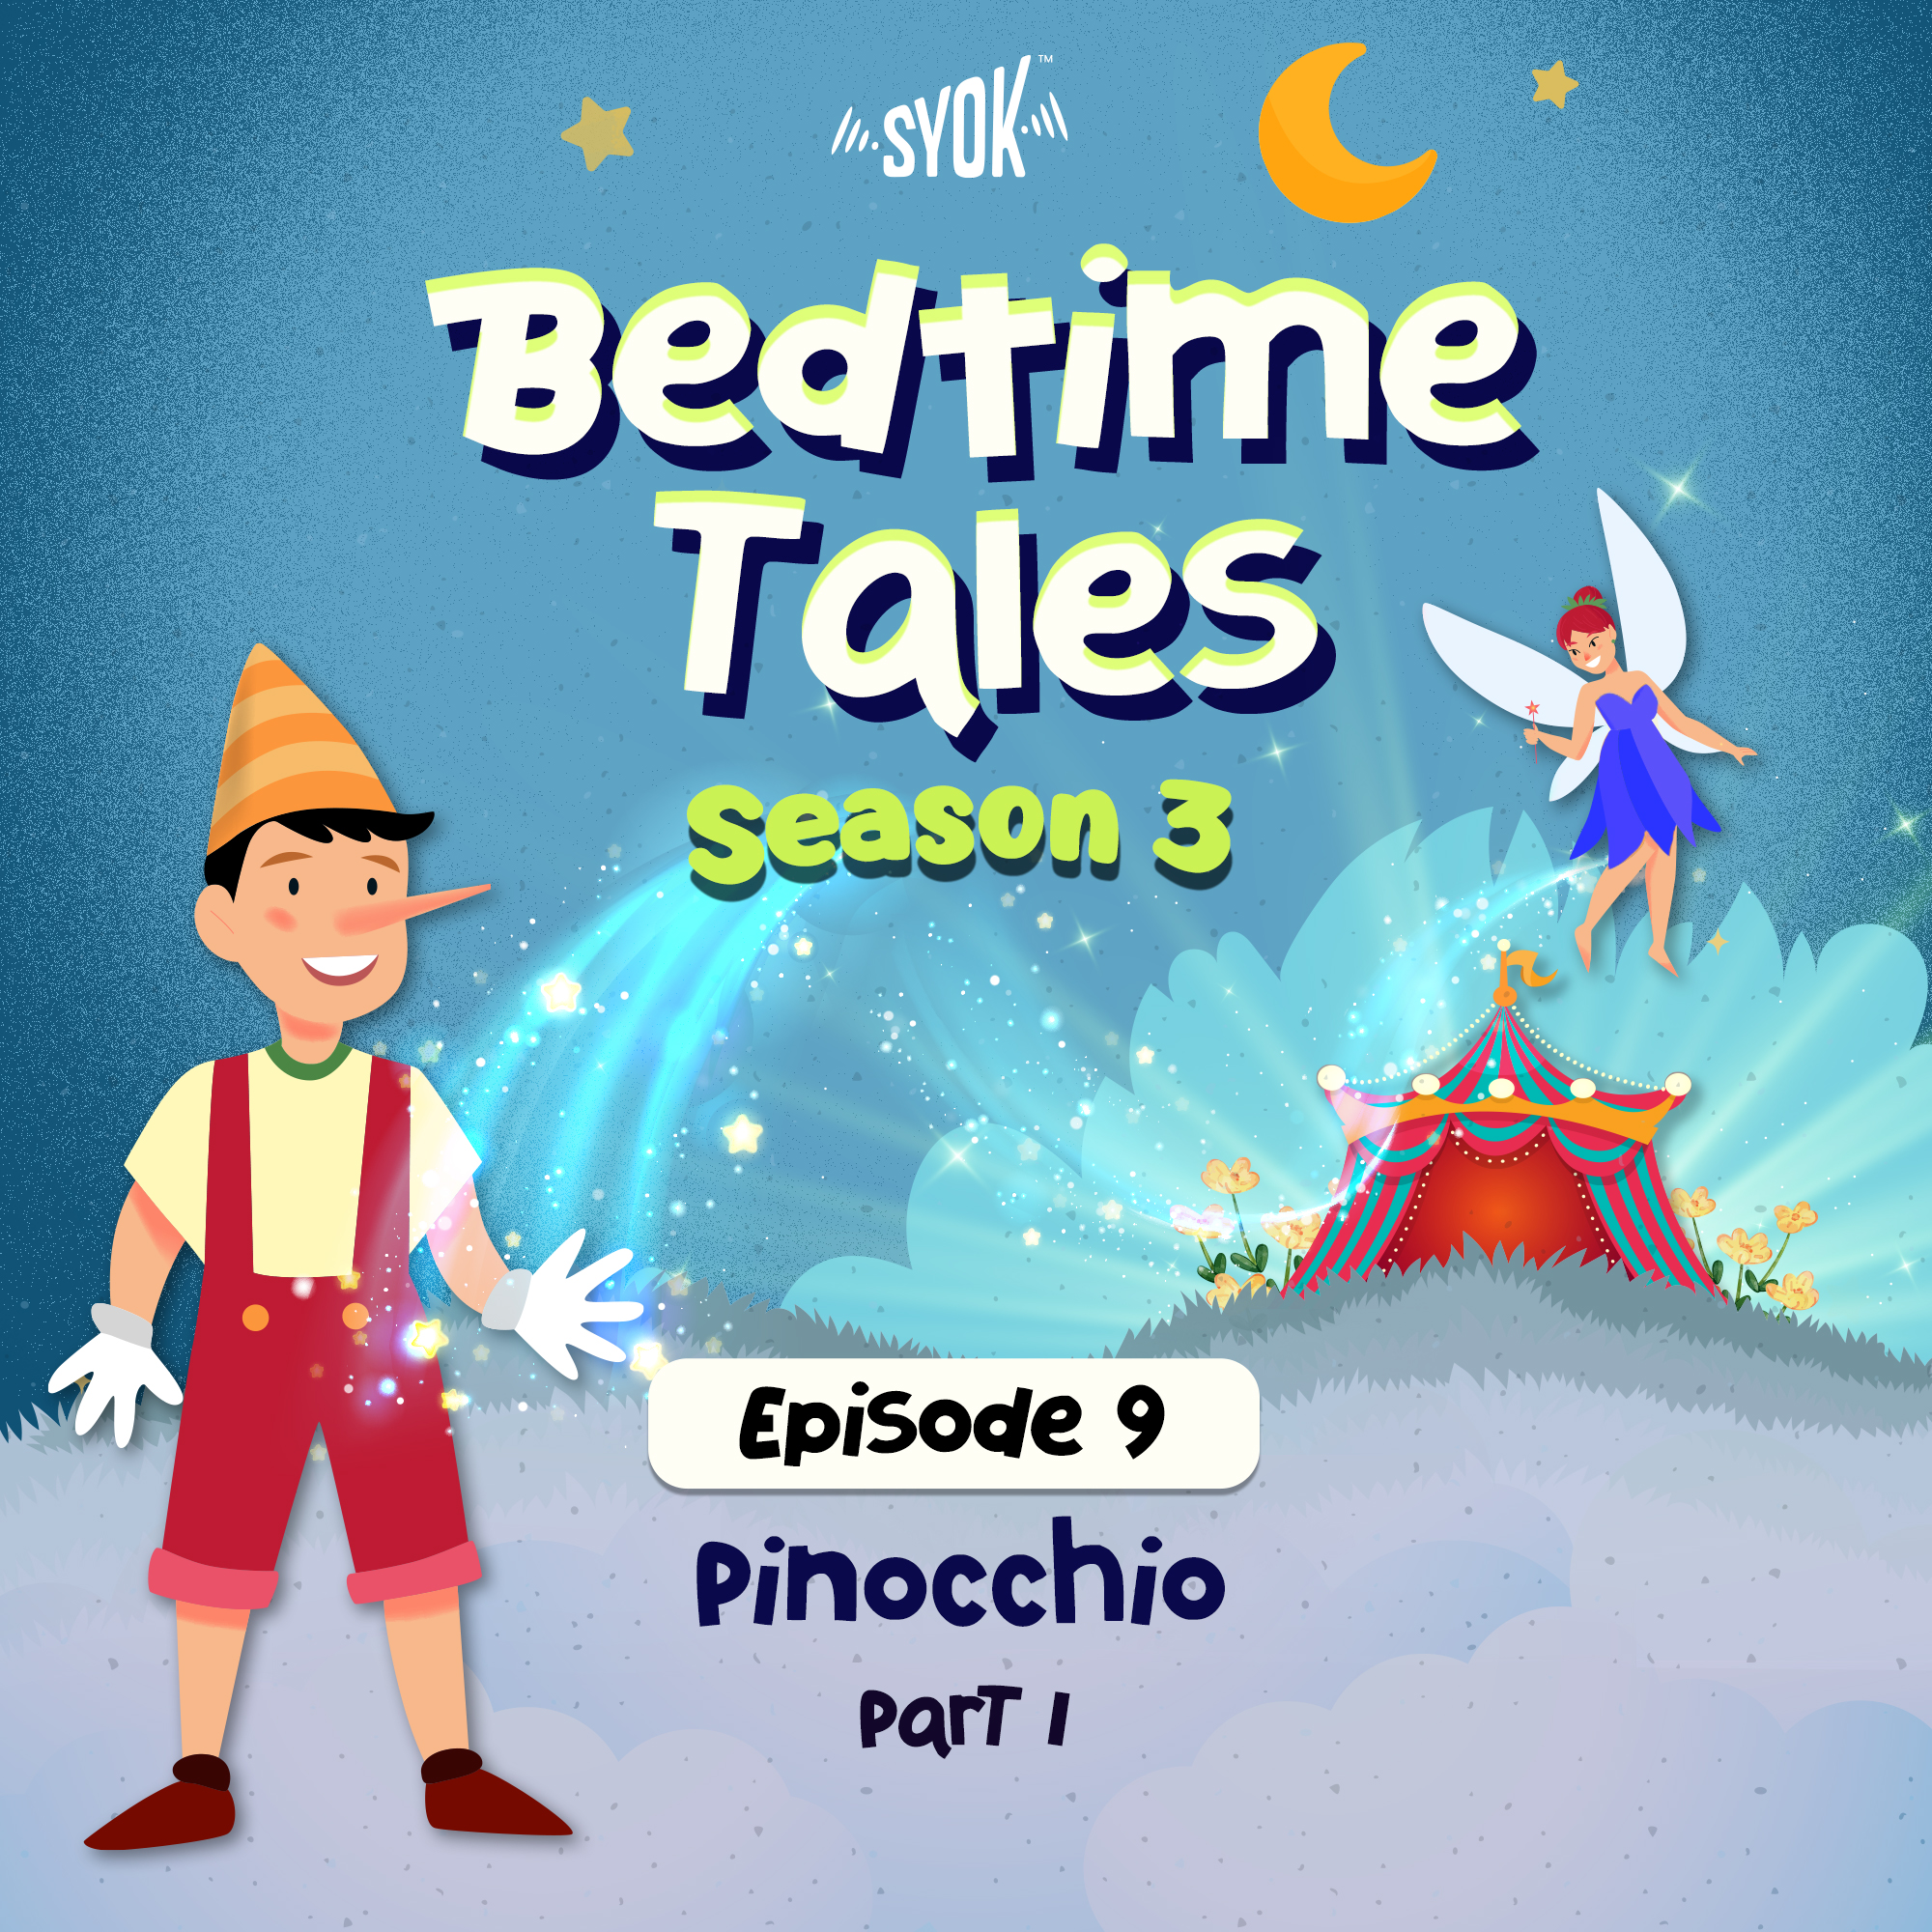 Pinocchio Part 1 | Bedtime Tales S3E9